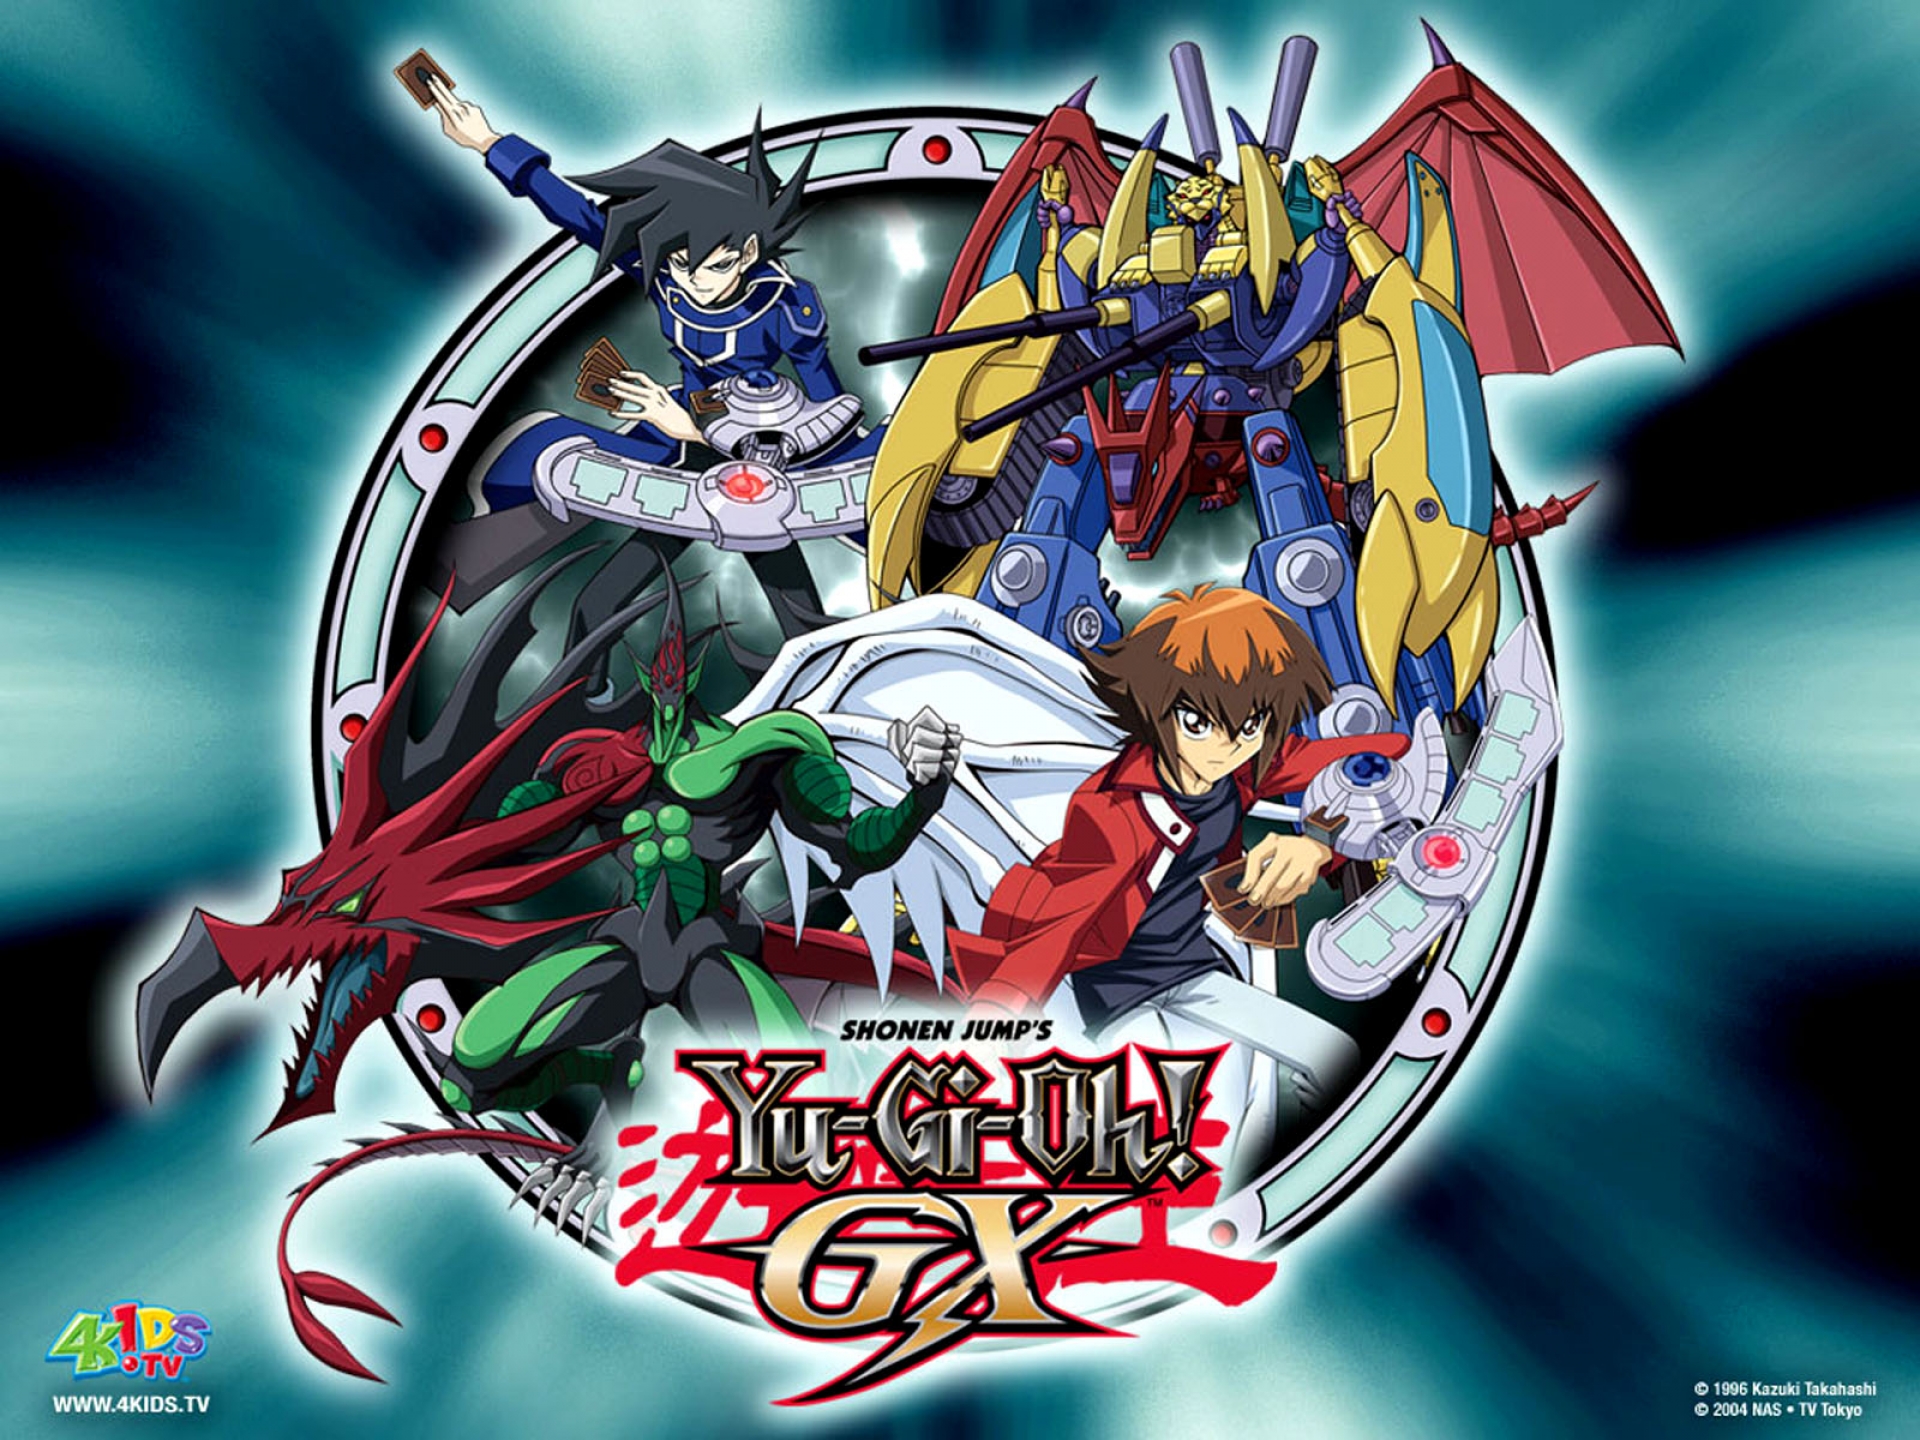 Yu-Gi-OH!: Duel Monsters (Dublado) - Lista de Episódios